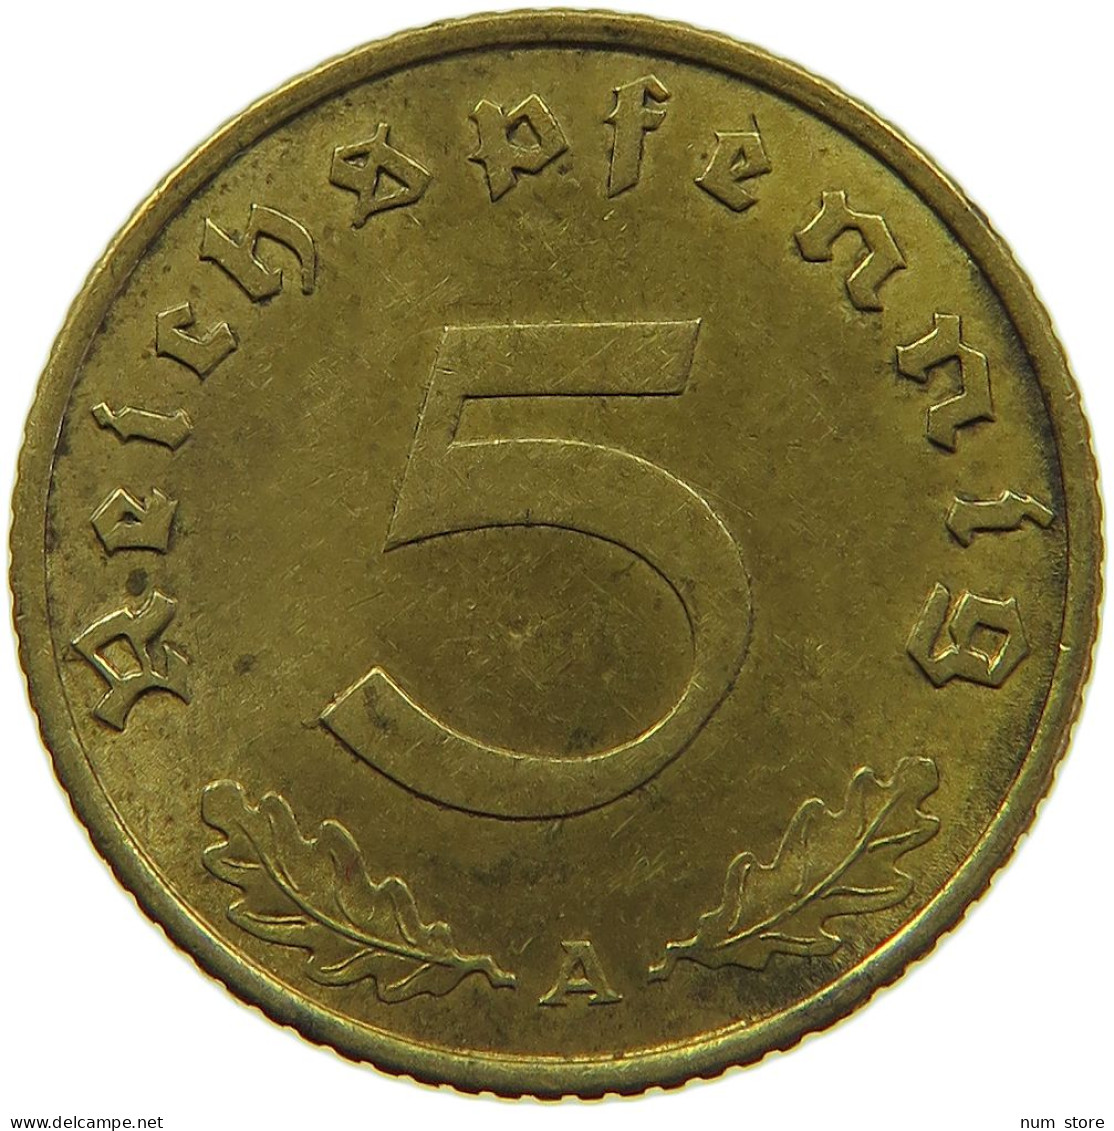 GERMANY 5 REICHSPFENNIG 1939 A #s091 0635 - 5 Reichspfennig